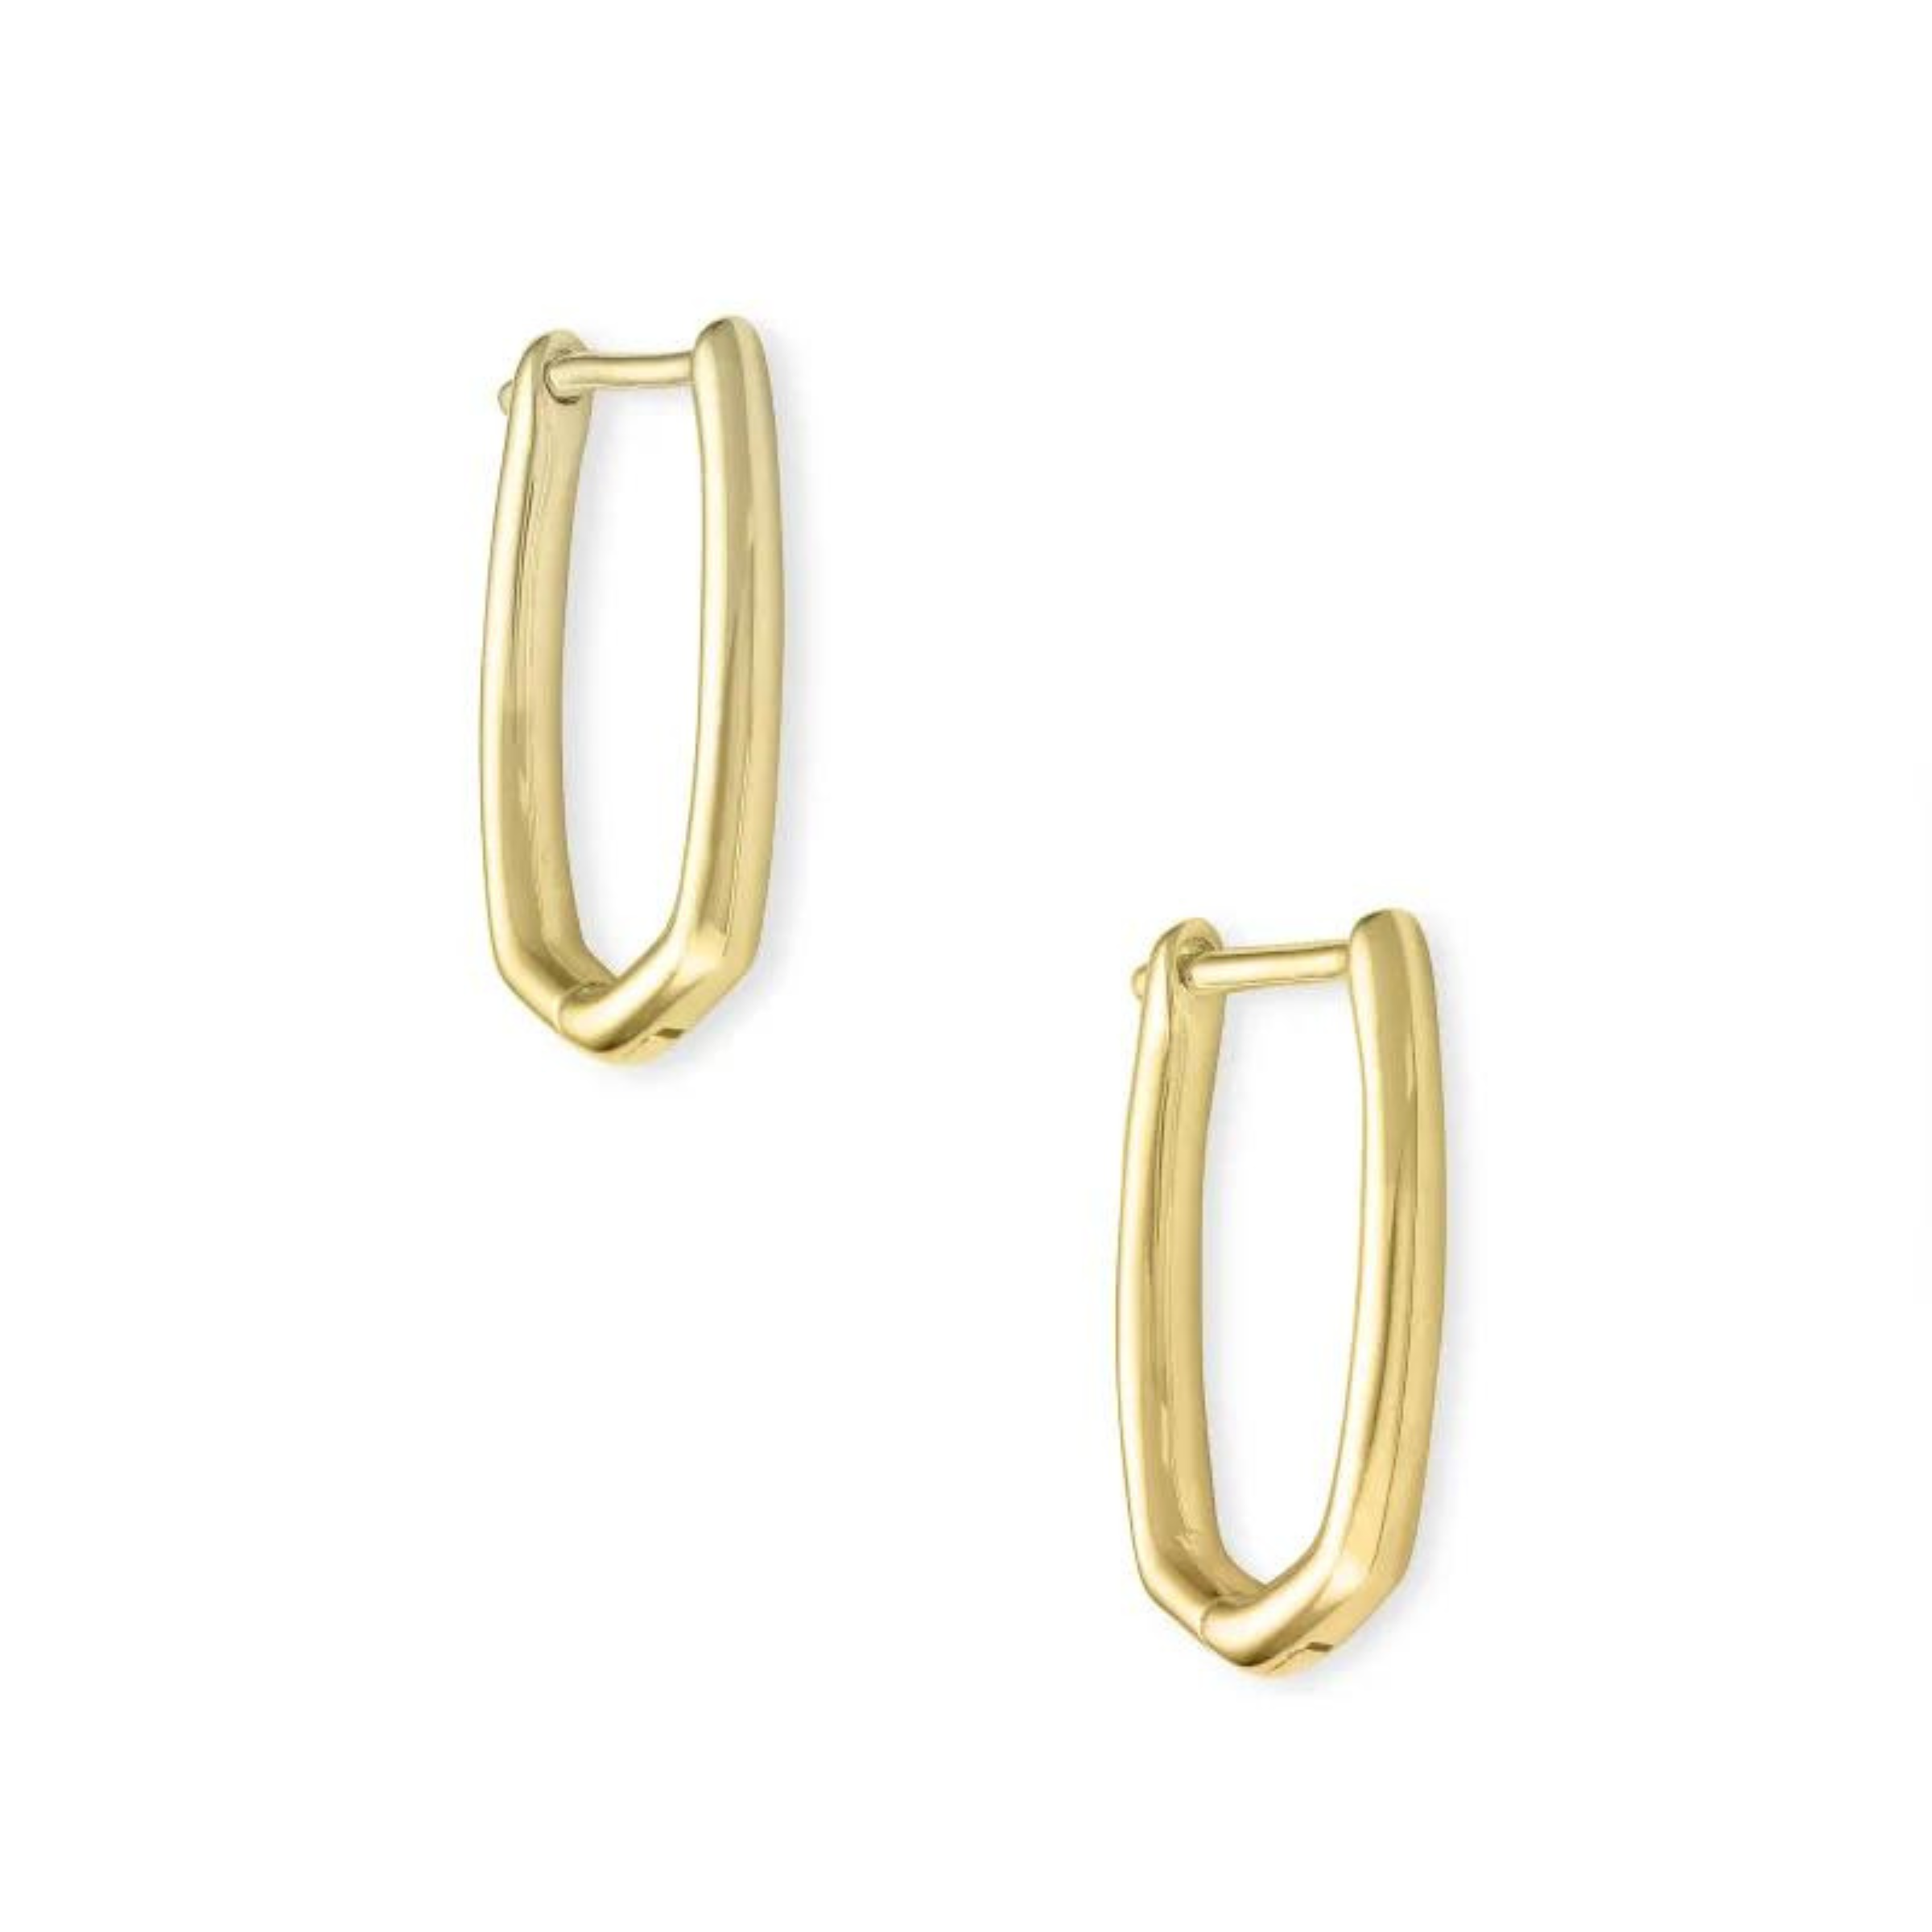 Kendra Scott | Ellen Huggie Earrings in 18k Gold Vermeil - Giddy Up Glamour Boutique